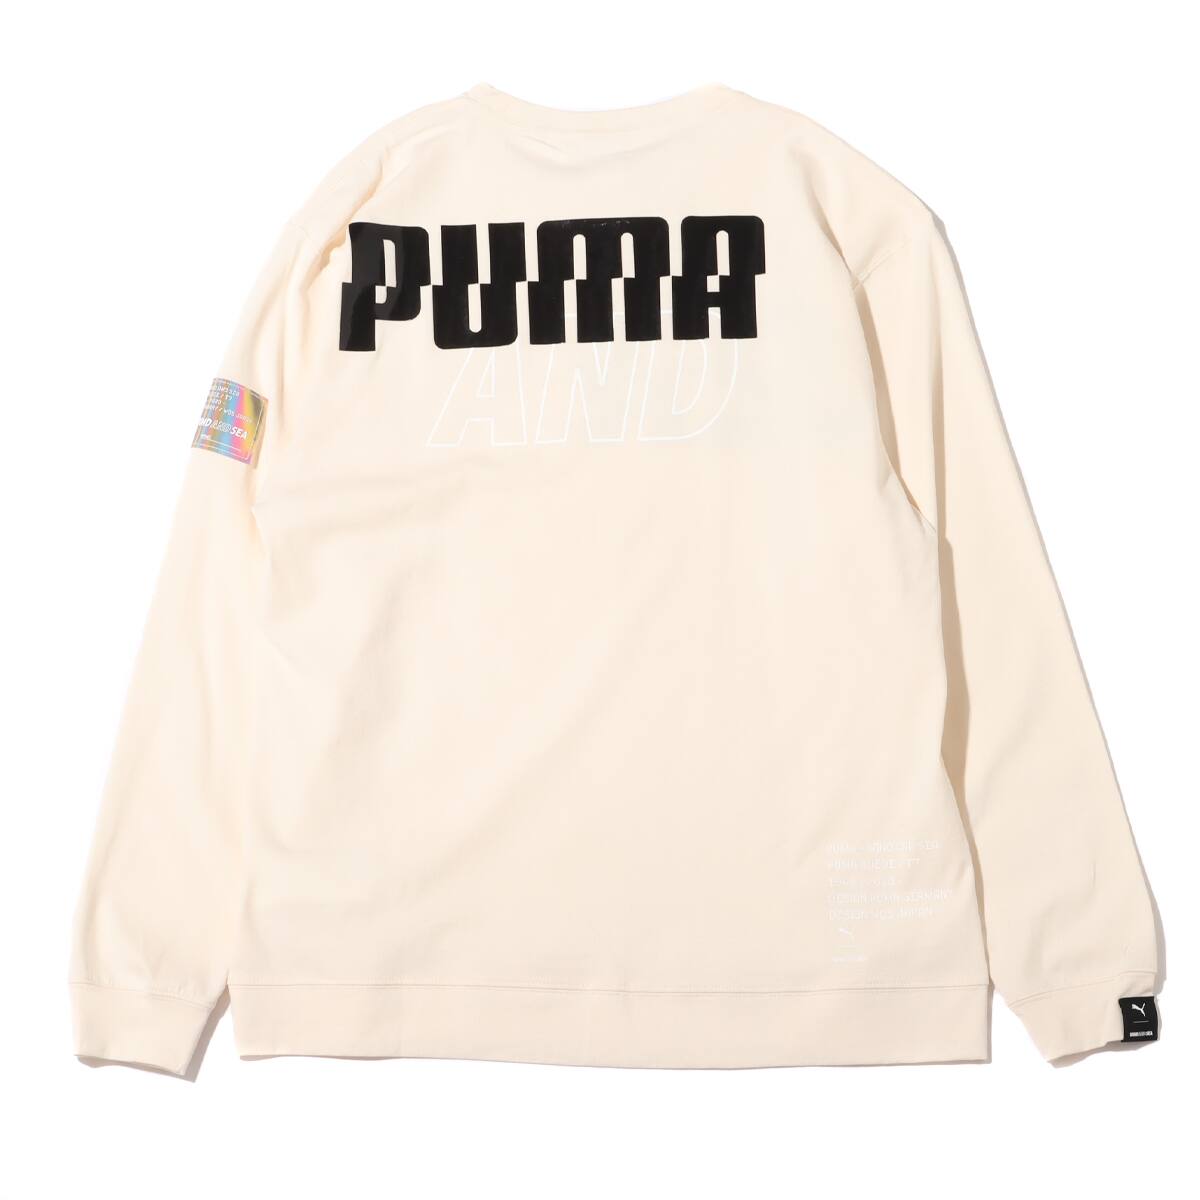 WIND AND SEA × PUMA Tシャツ Mサイズ